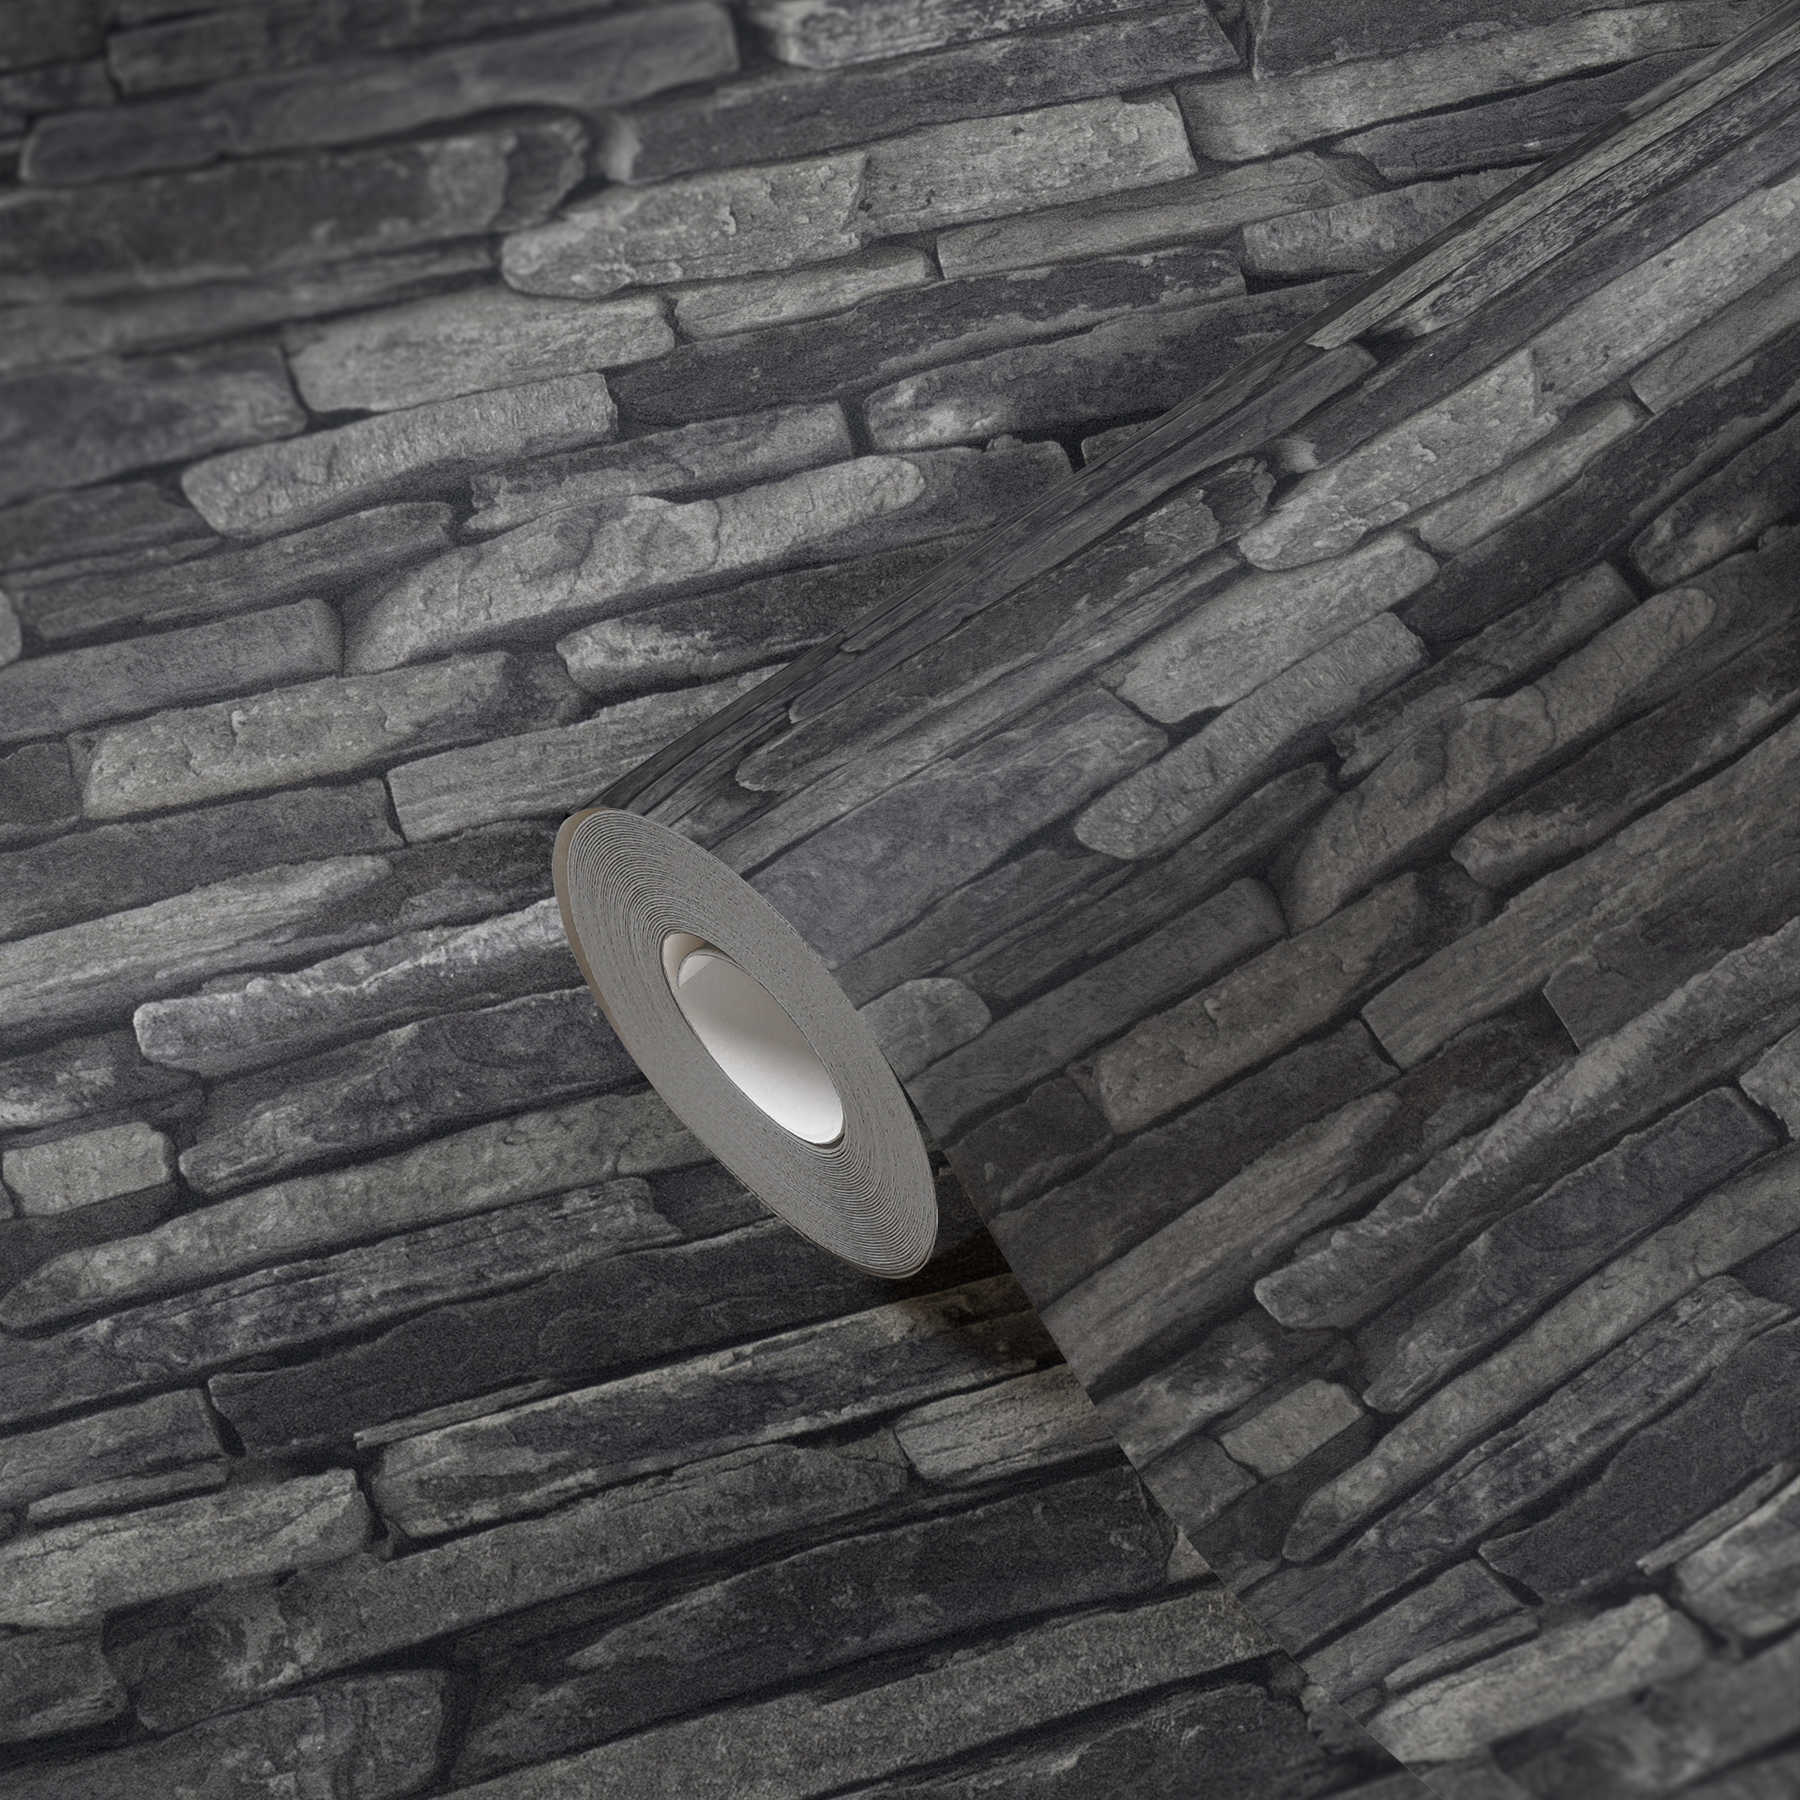             Behang met steenlook, donkere natuurstenen & 3D-effect - grijs, zwart
        